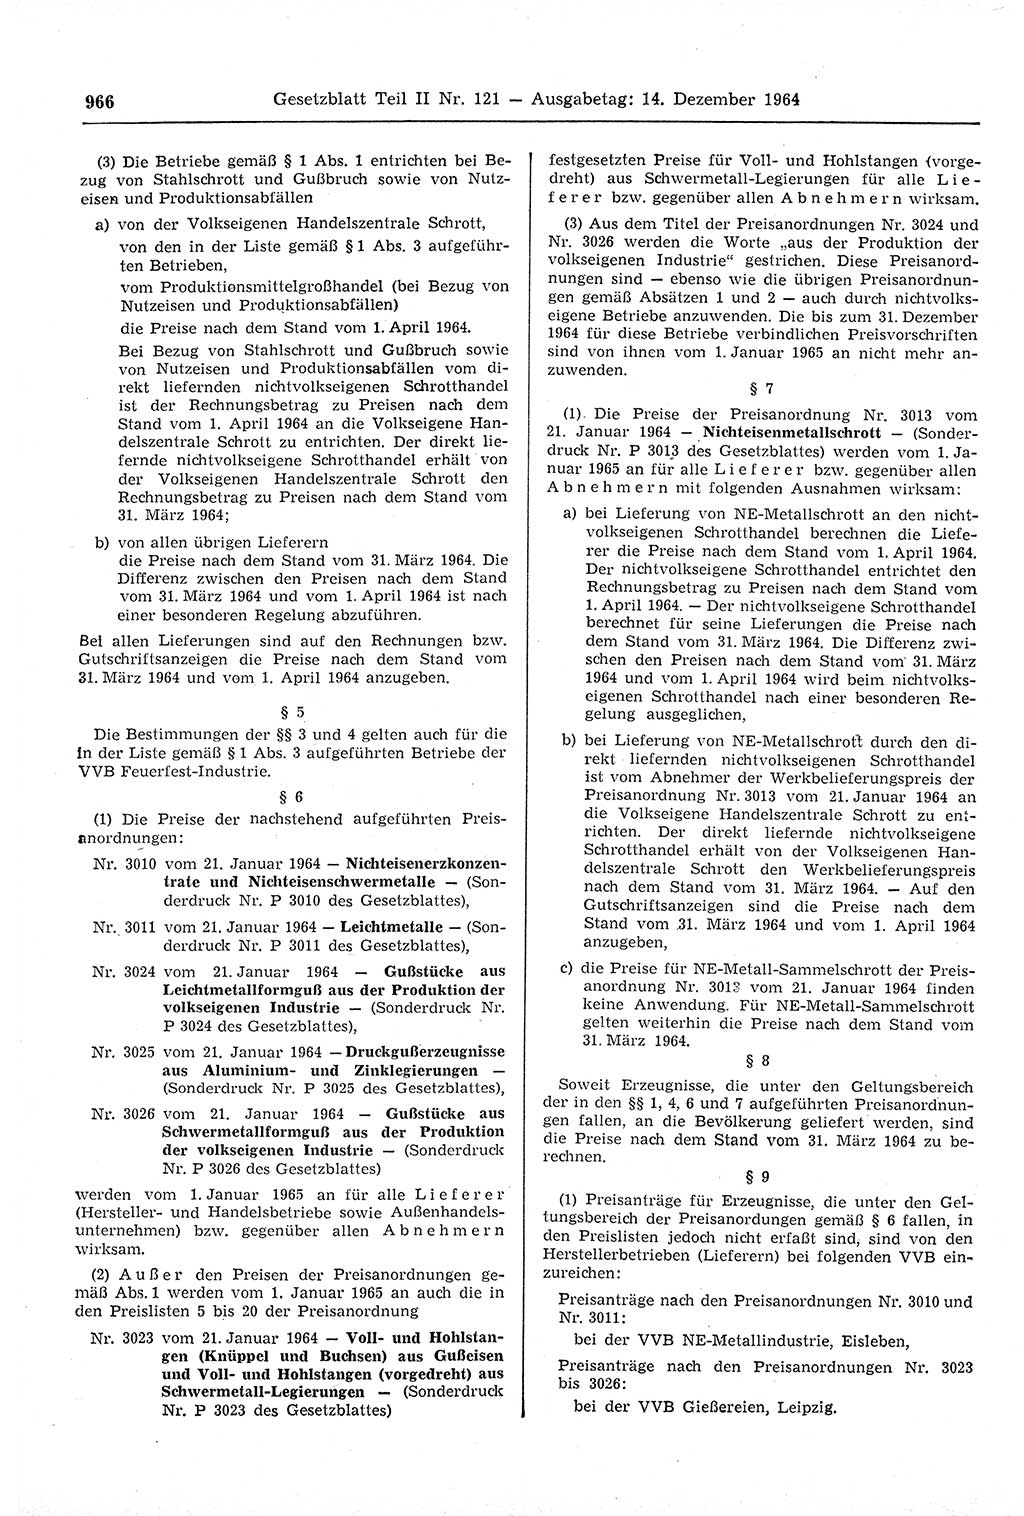 Gesetzblatt (GBl.) der Deutschen Demokratischen Republik (DDR) Teil ⅠⅠ 1964, Seite 966 (GBl. DDR ⅠⅠ 1964, S. 966)